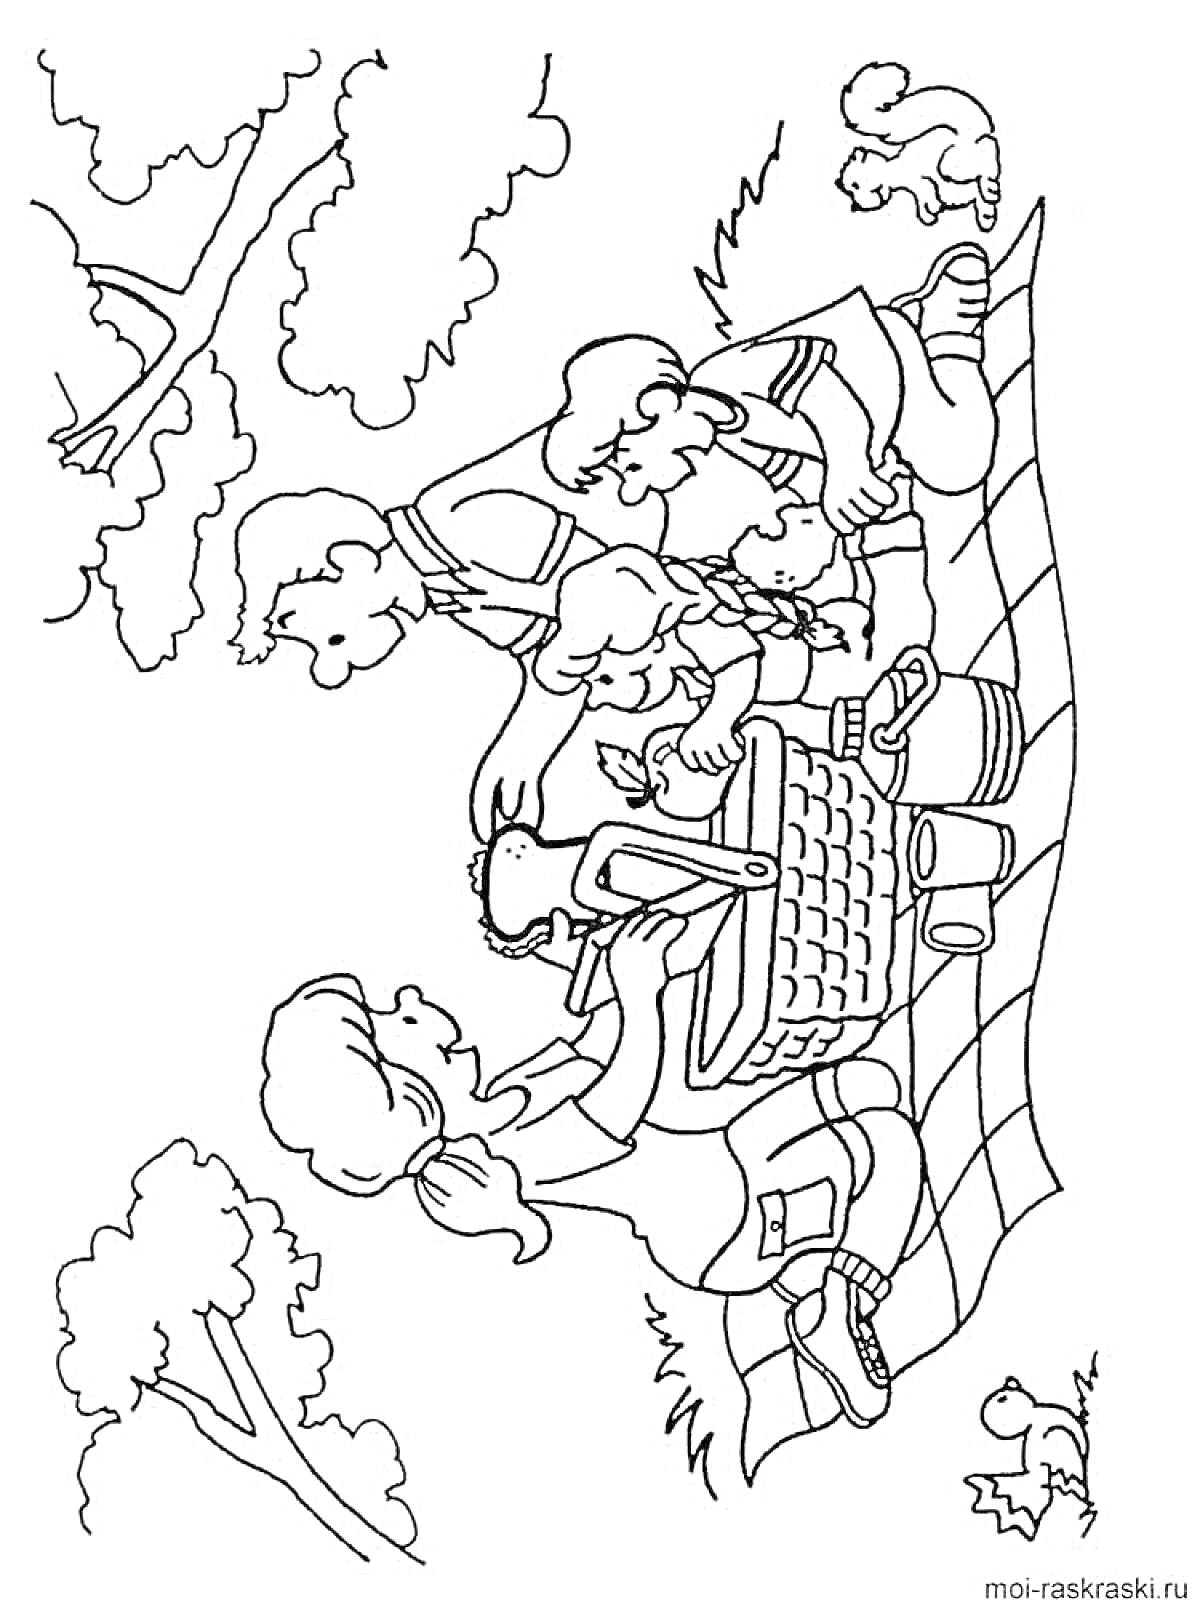 Раскраска Семейный пикник на природе с корзиной для пикника, двумя взрослыми, двумя детьми, собакой и уткой